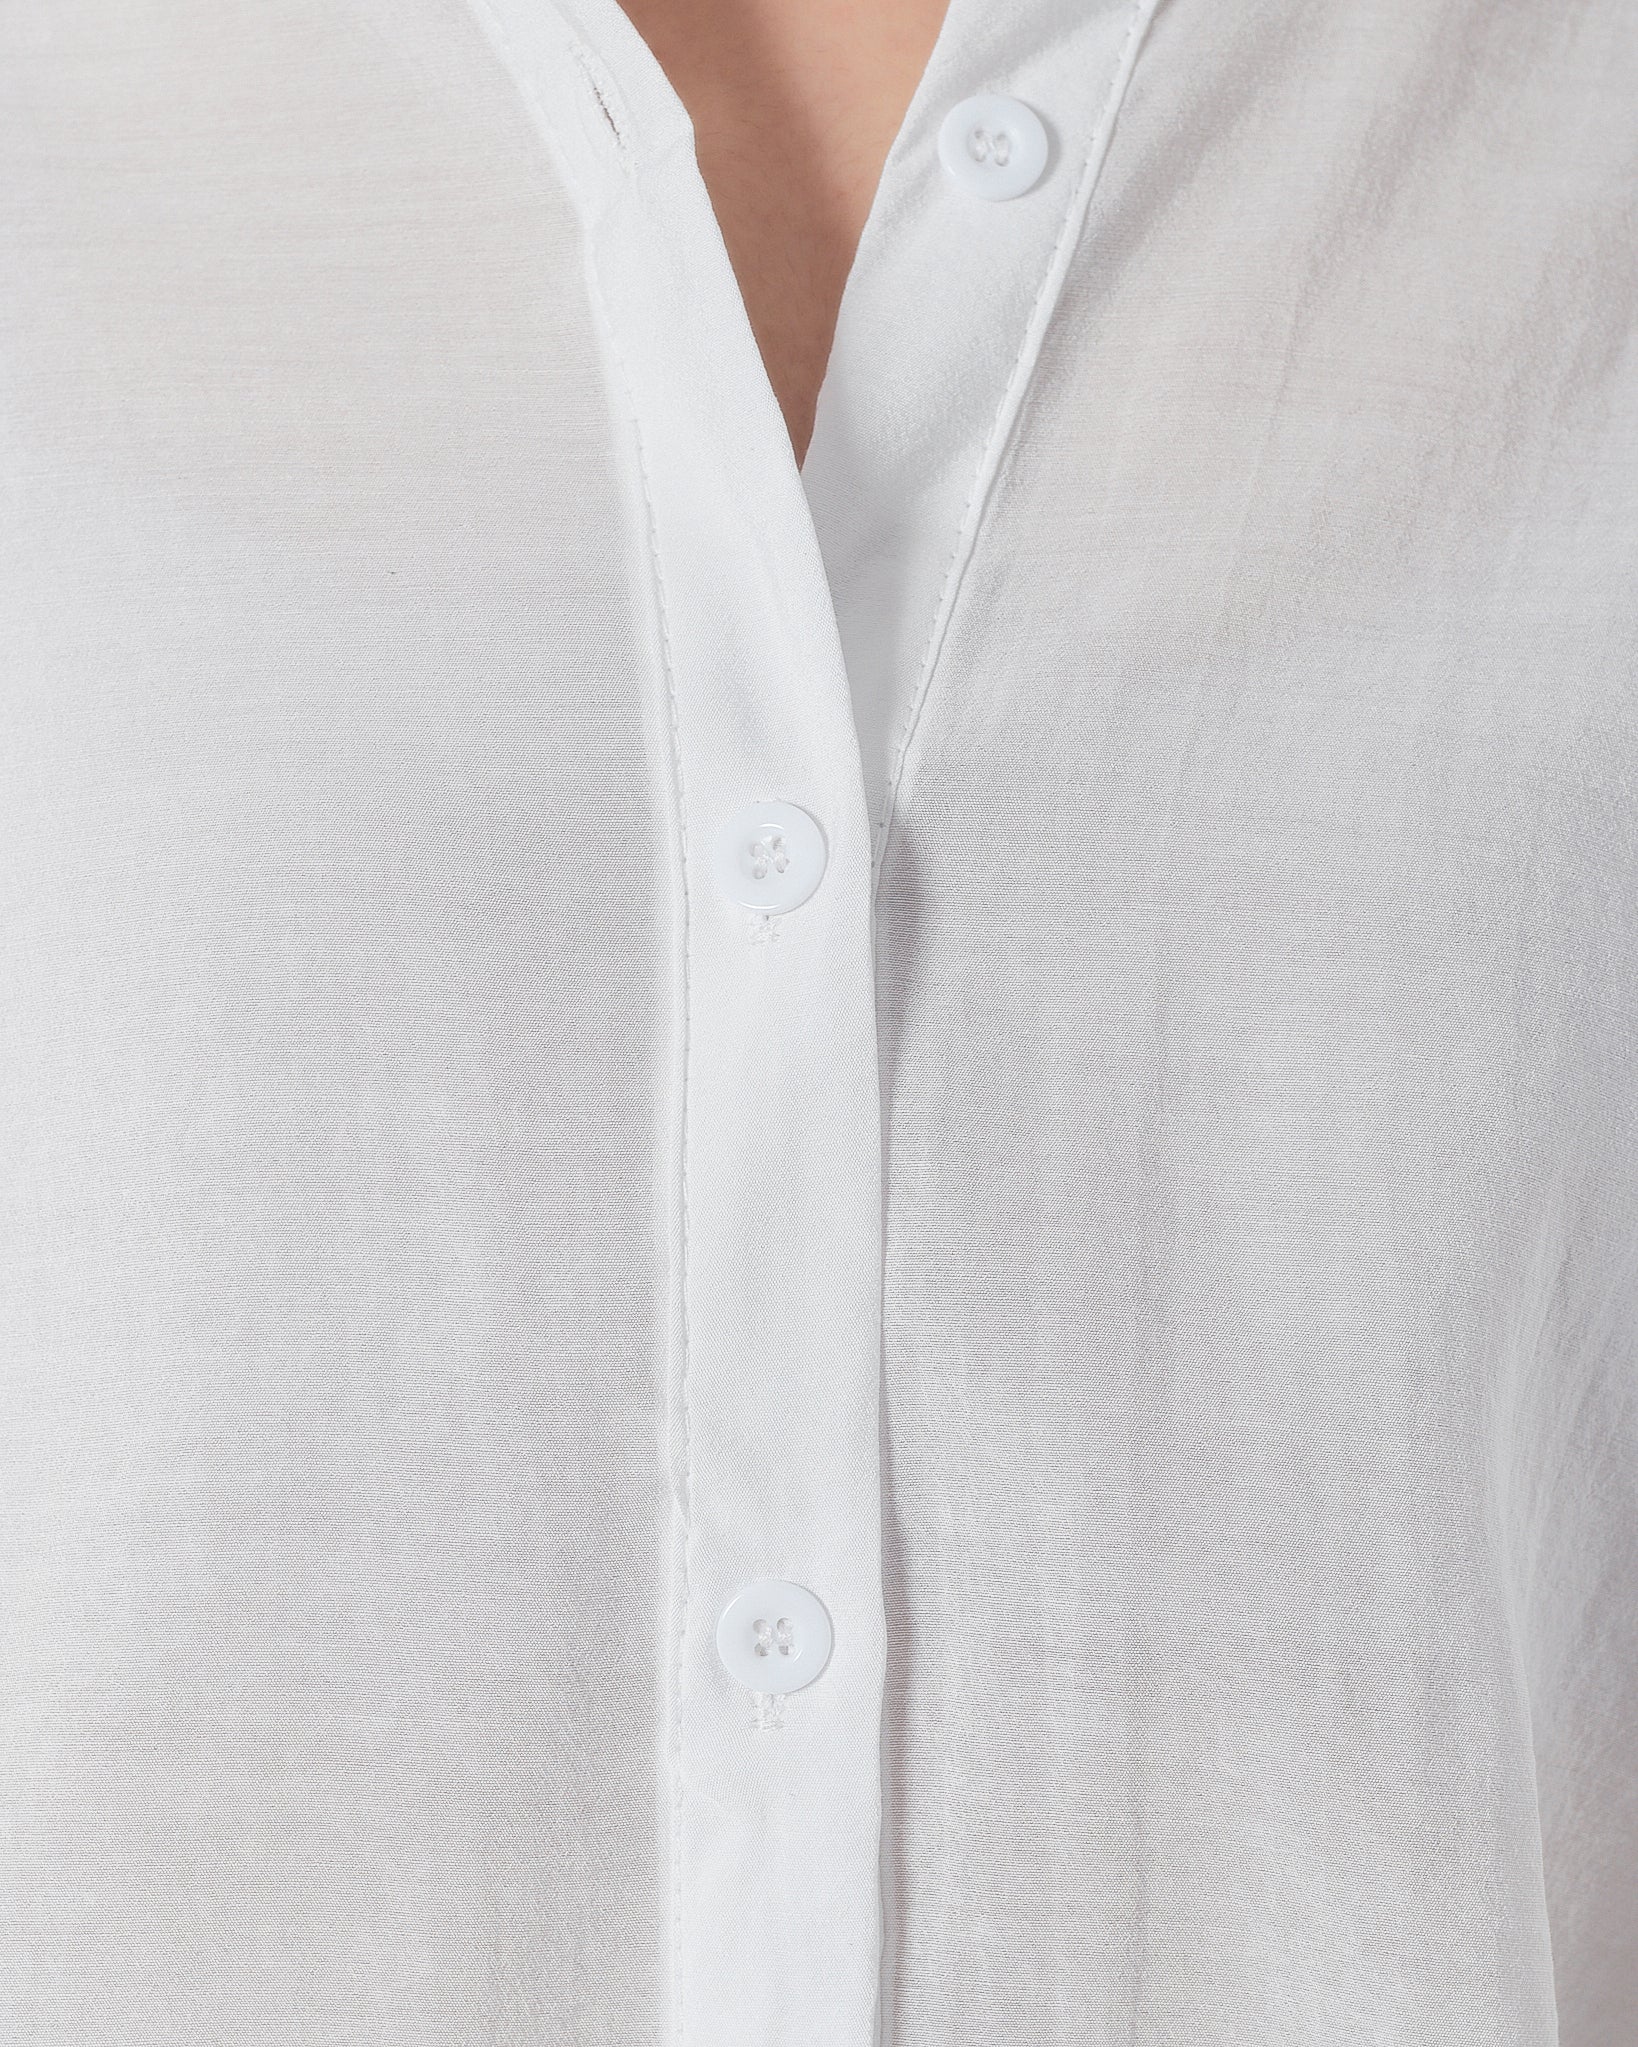 Lady White Shirts Short Sleeve 14.90